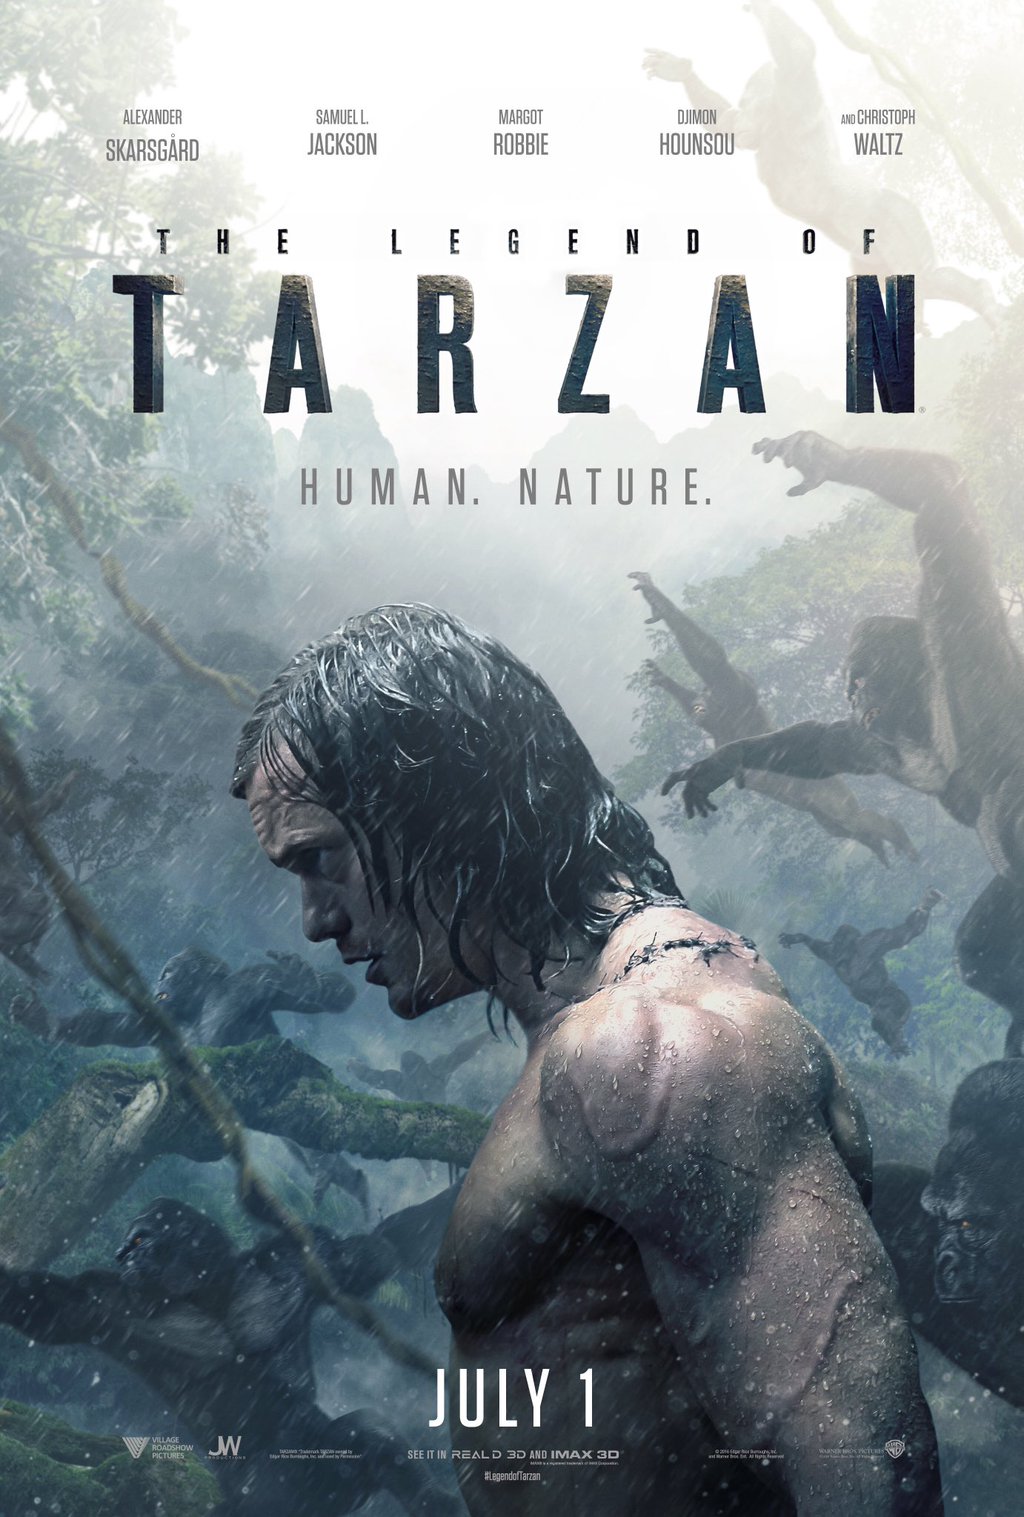 Tarzan und Jane die Schande von Jane